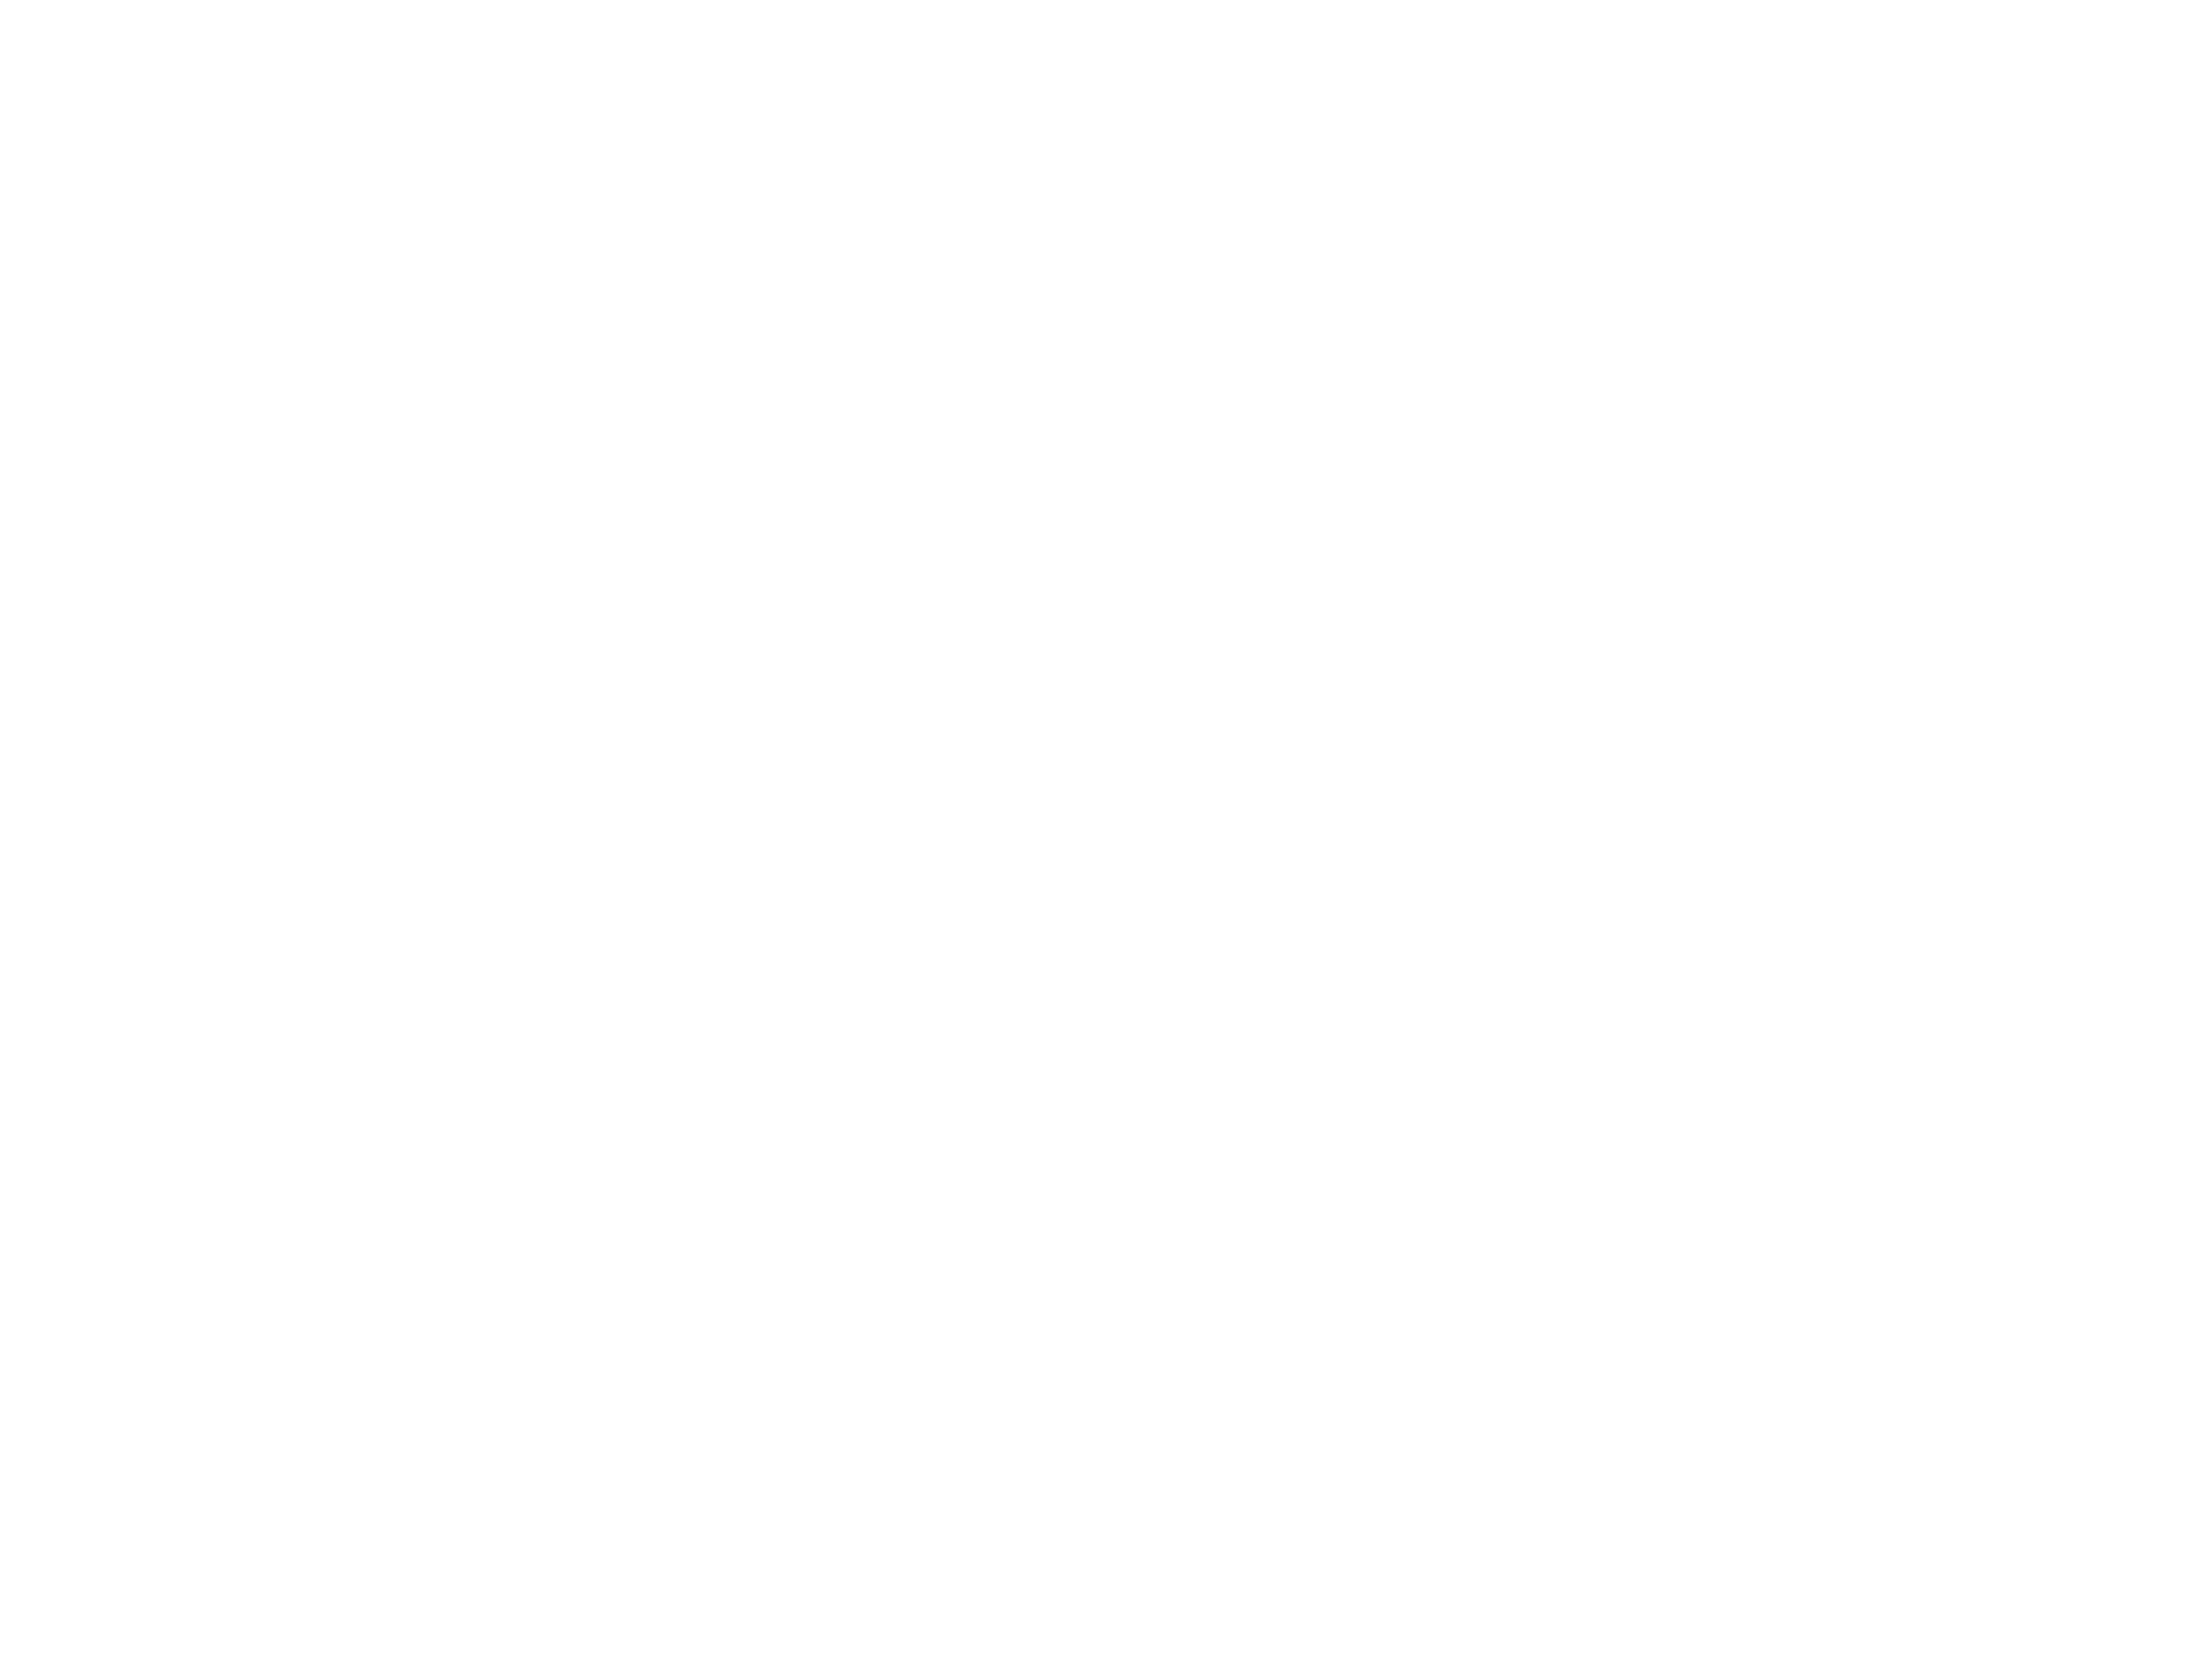 Grind One Reeler Short Film Award of Excellence